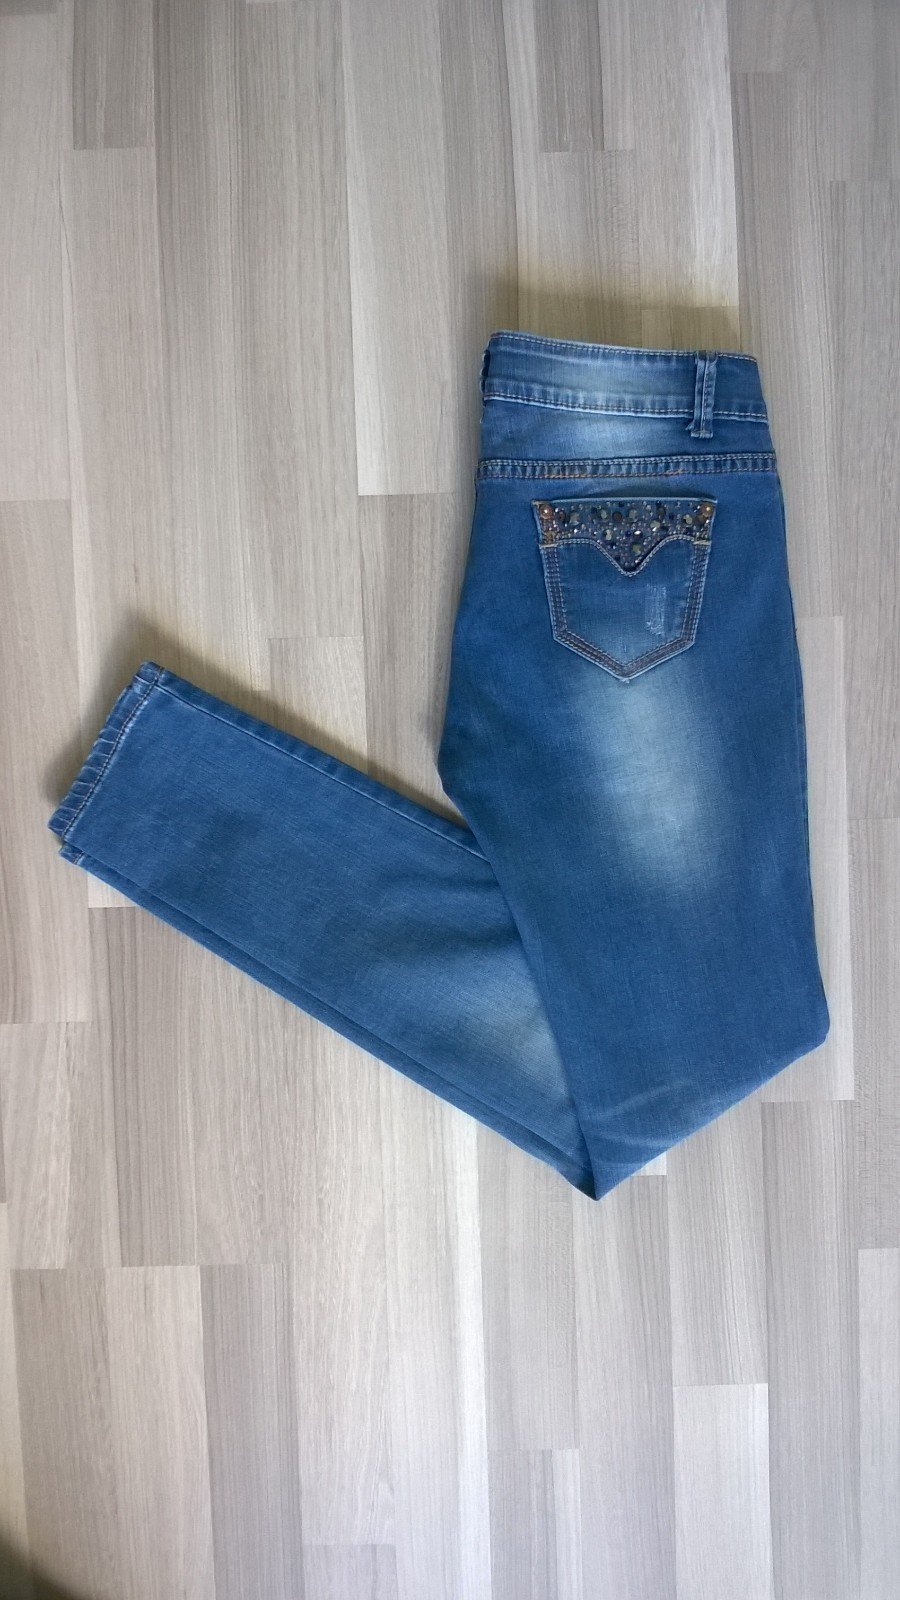 Skinny Jeans Röhre Ripped Hose destroyed blau mit Steinen Ker-bix-ker forever